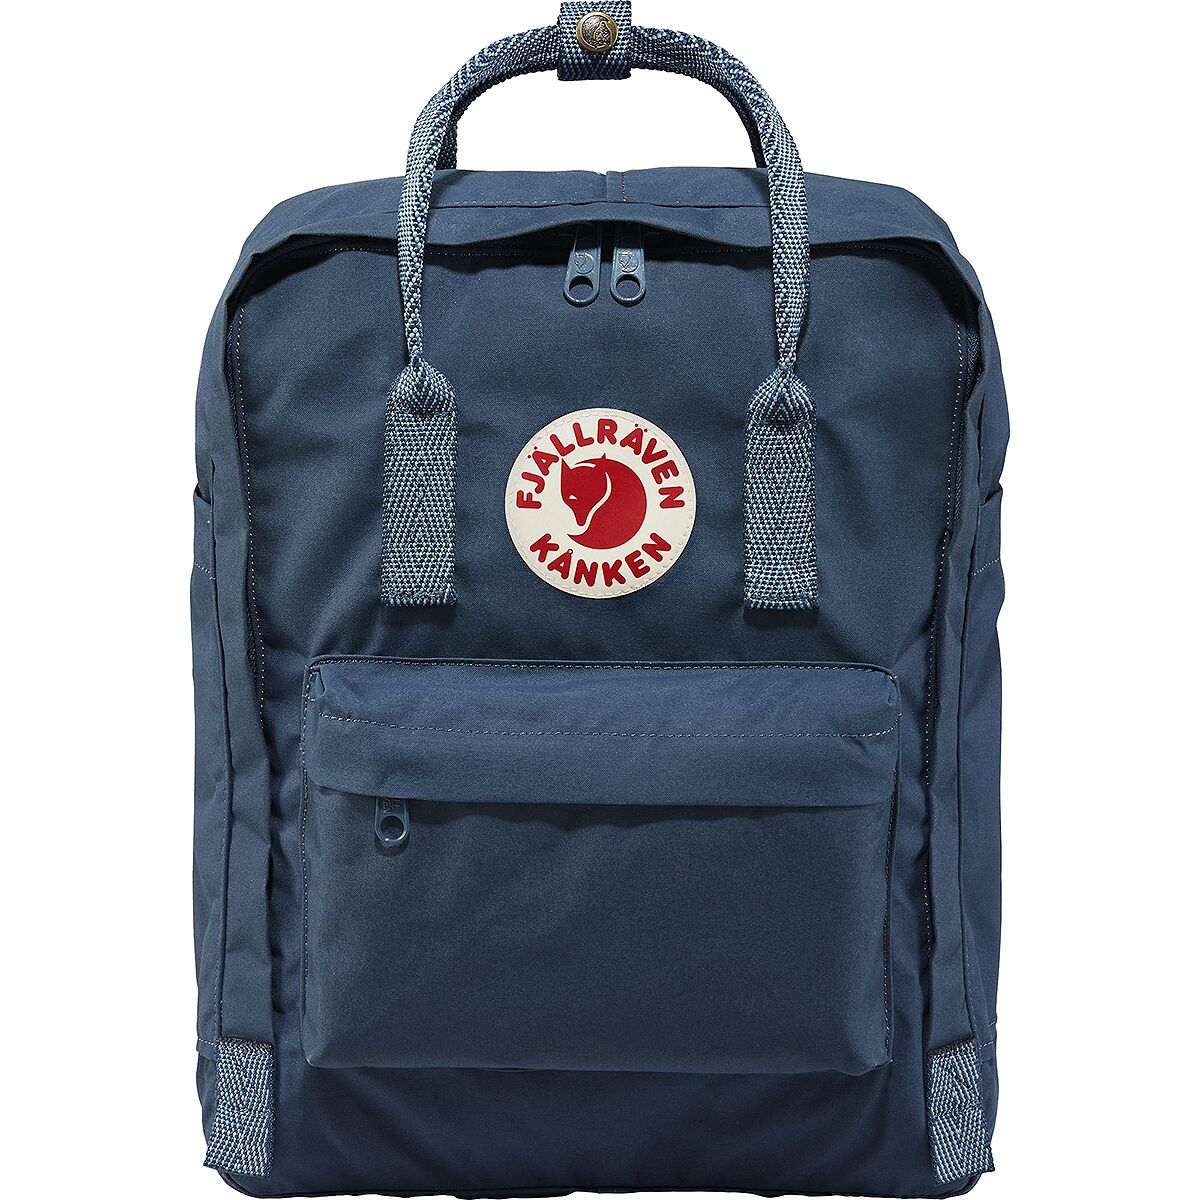 Fjallraven Kanken Backpack 23510 Royal Blue-goose Eye Color 540 ... موقع بيع مكياج اصلي بالجمله